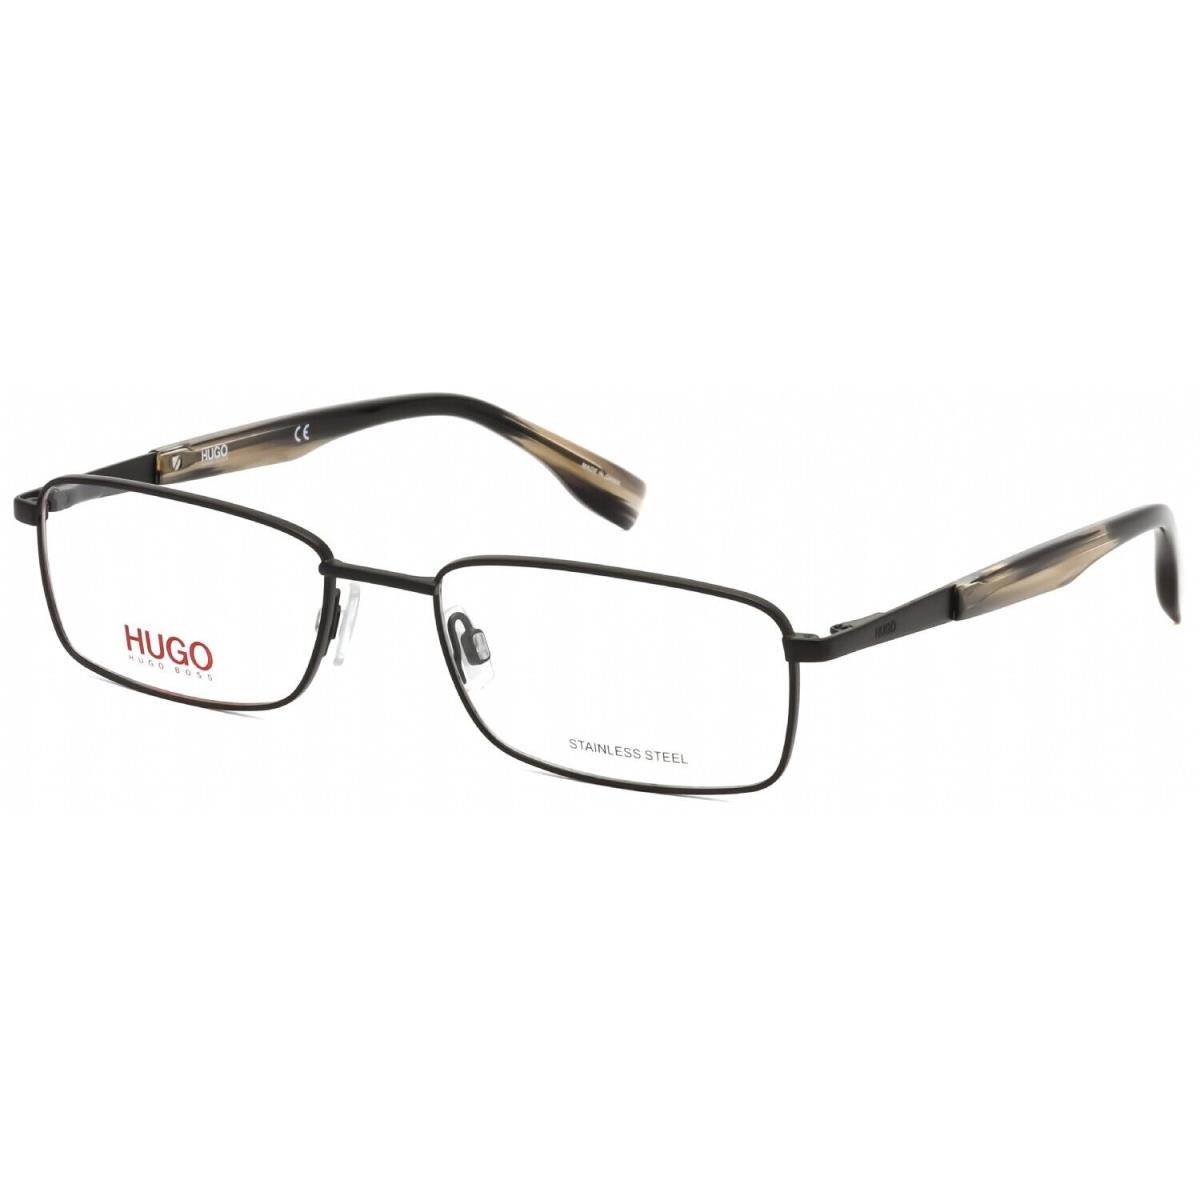 Hugo Boss HG0335 Fll Rectangle Matte Black Eyeglasses - Black, Frame: Matte Black